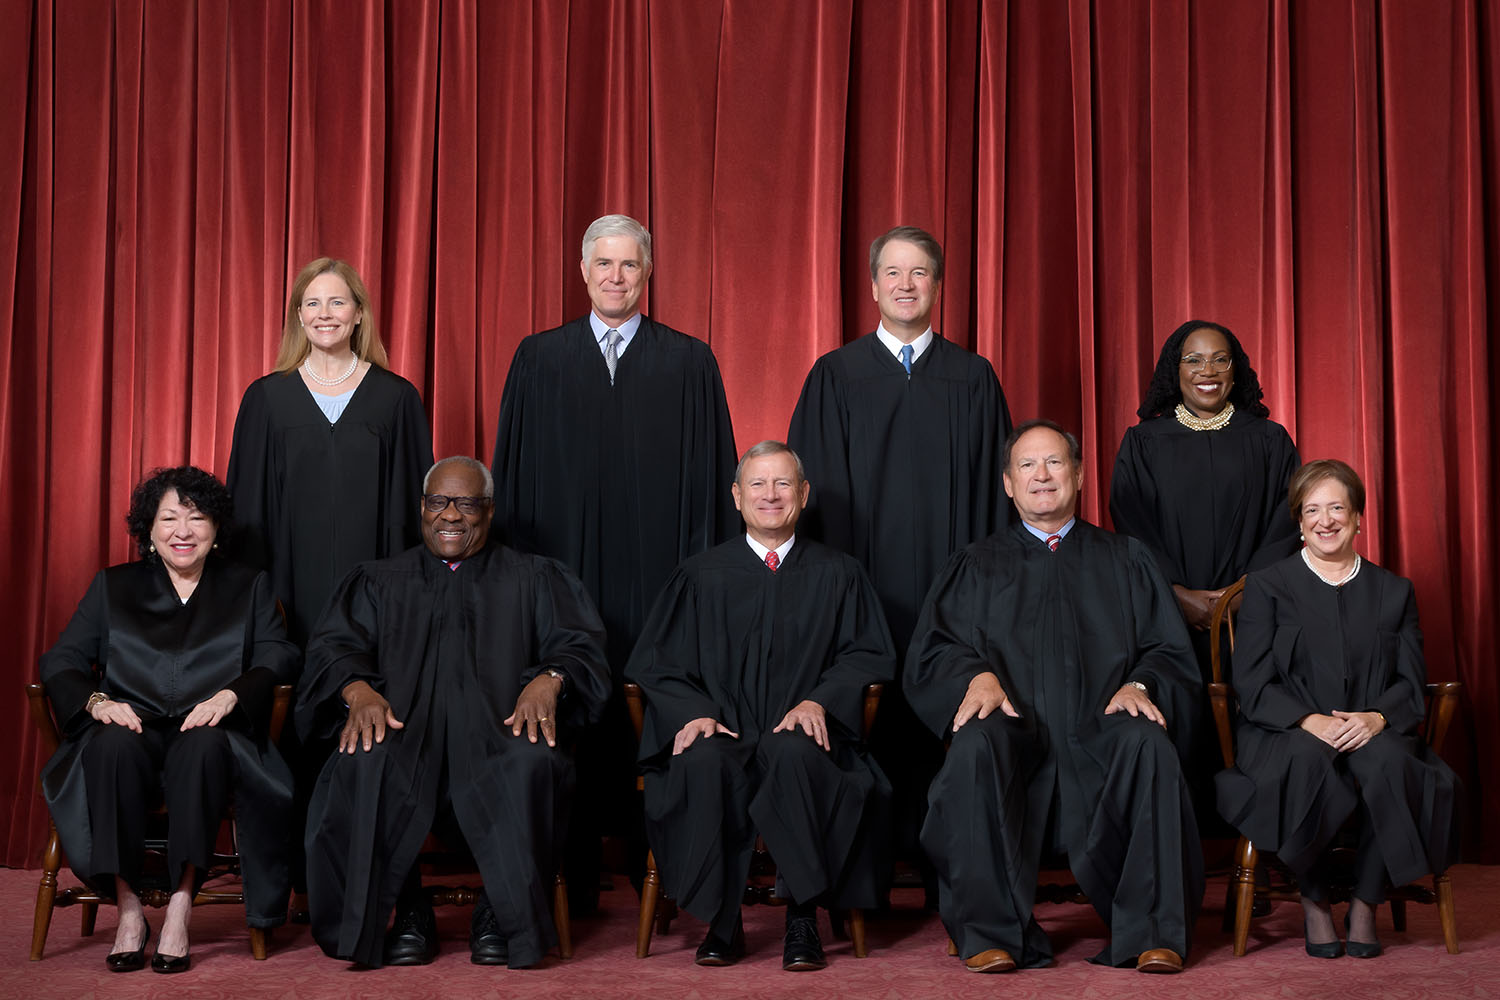 Foto dos nove juízes da Corte americana usando uma toga preta em um fundo acortinado vermelho; quatro estão em pé e cinco estão sentados